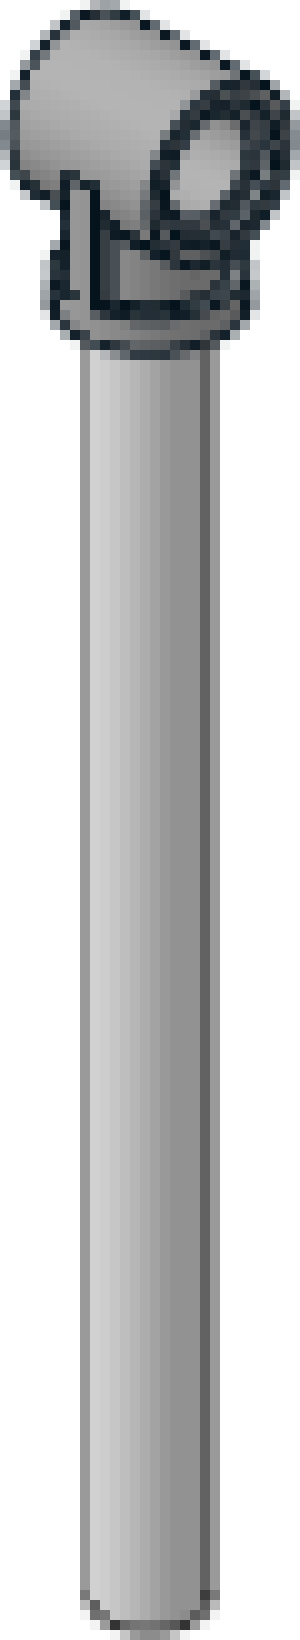 Pneumatic Cylinder V2 2 x 11